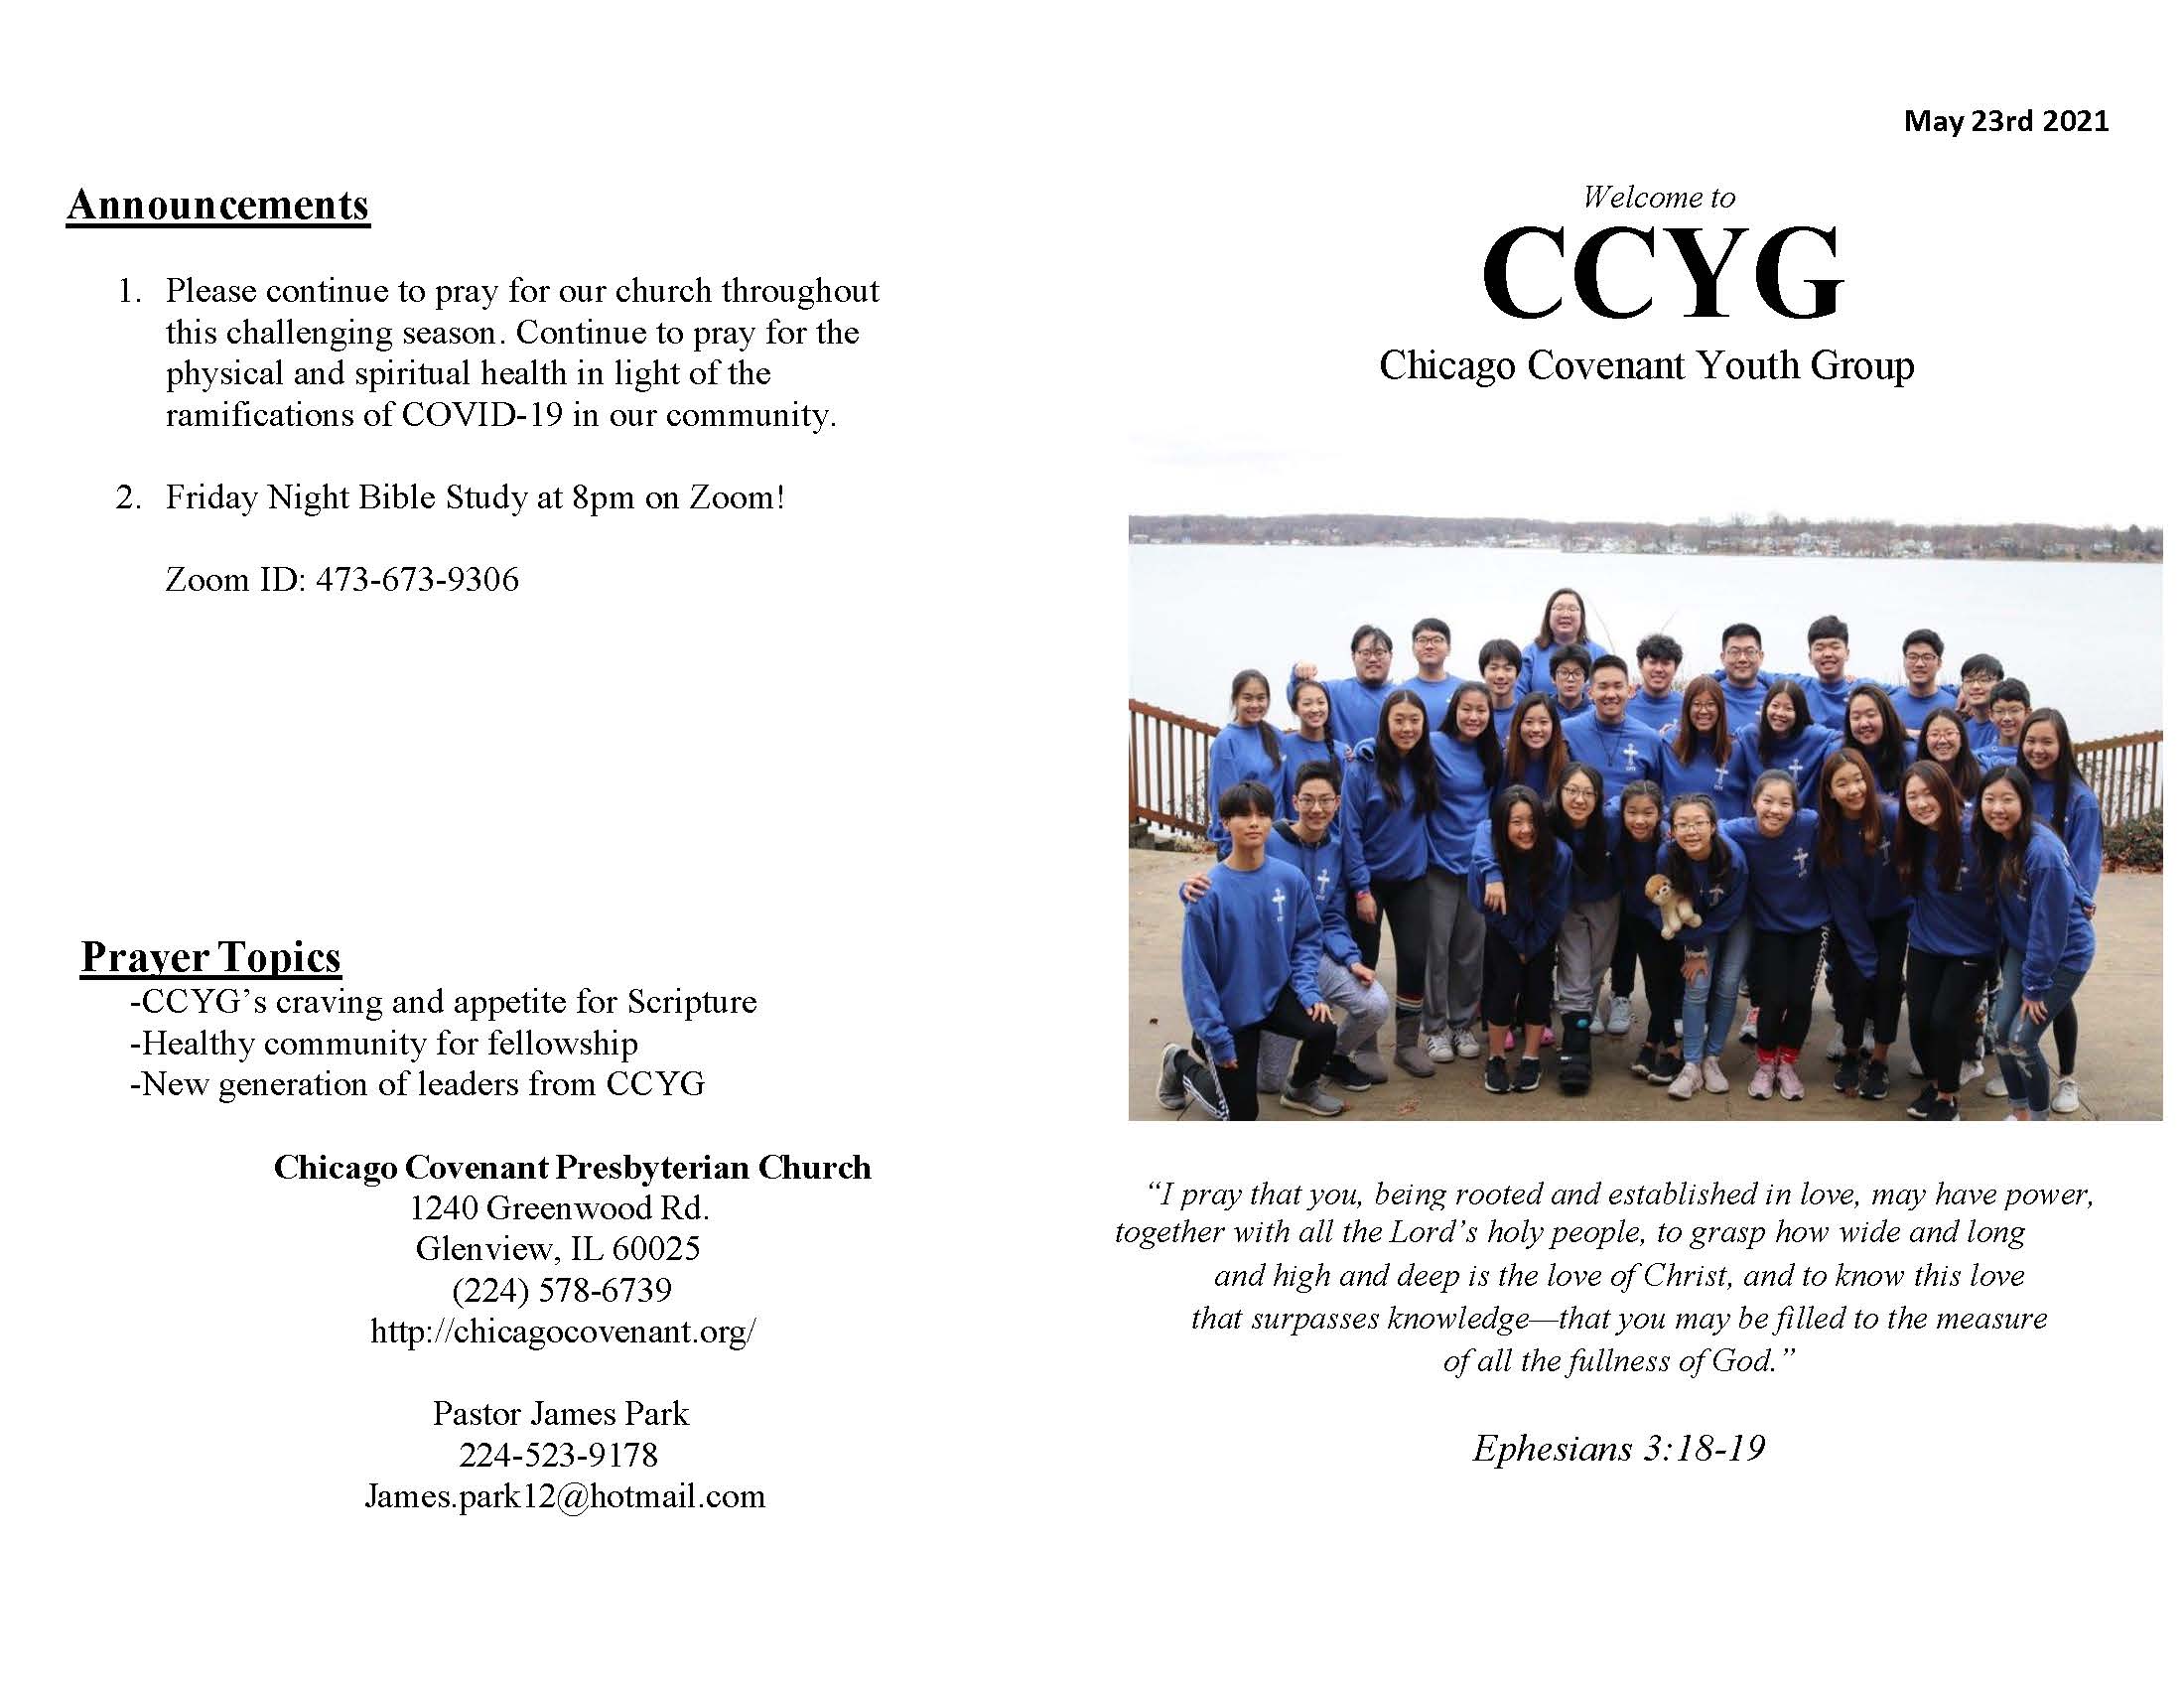 CCYG Bulletin 210523_Page_1.jpg